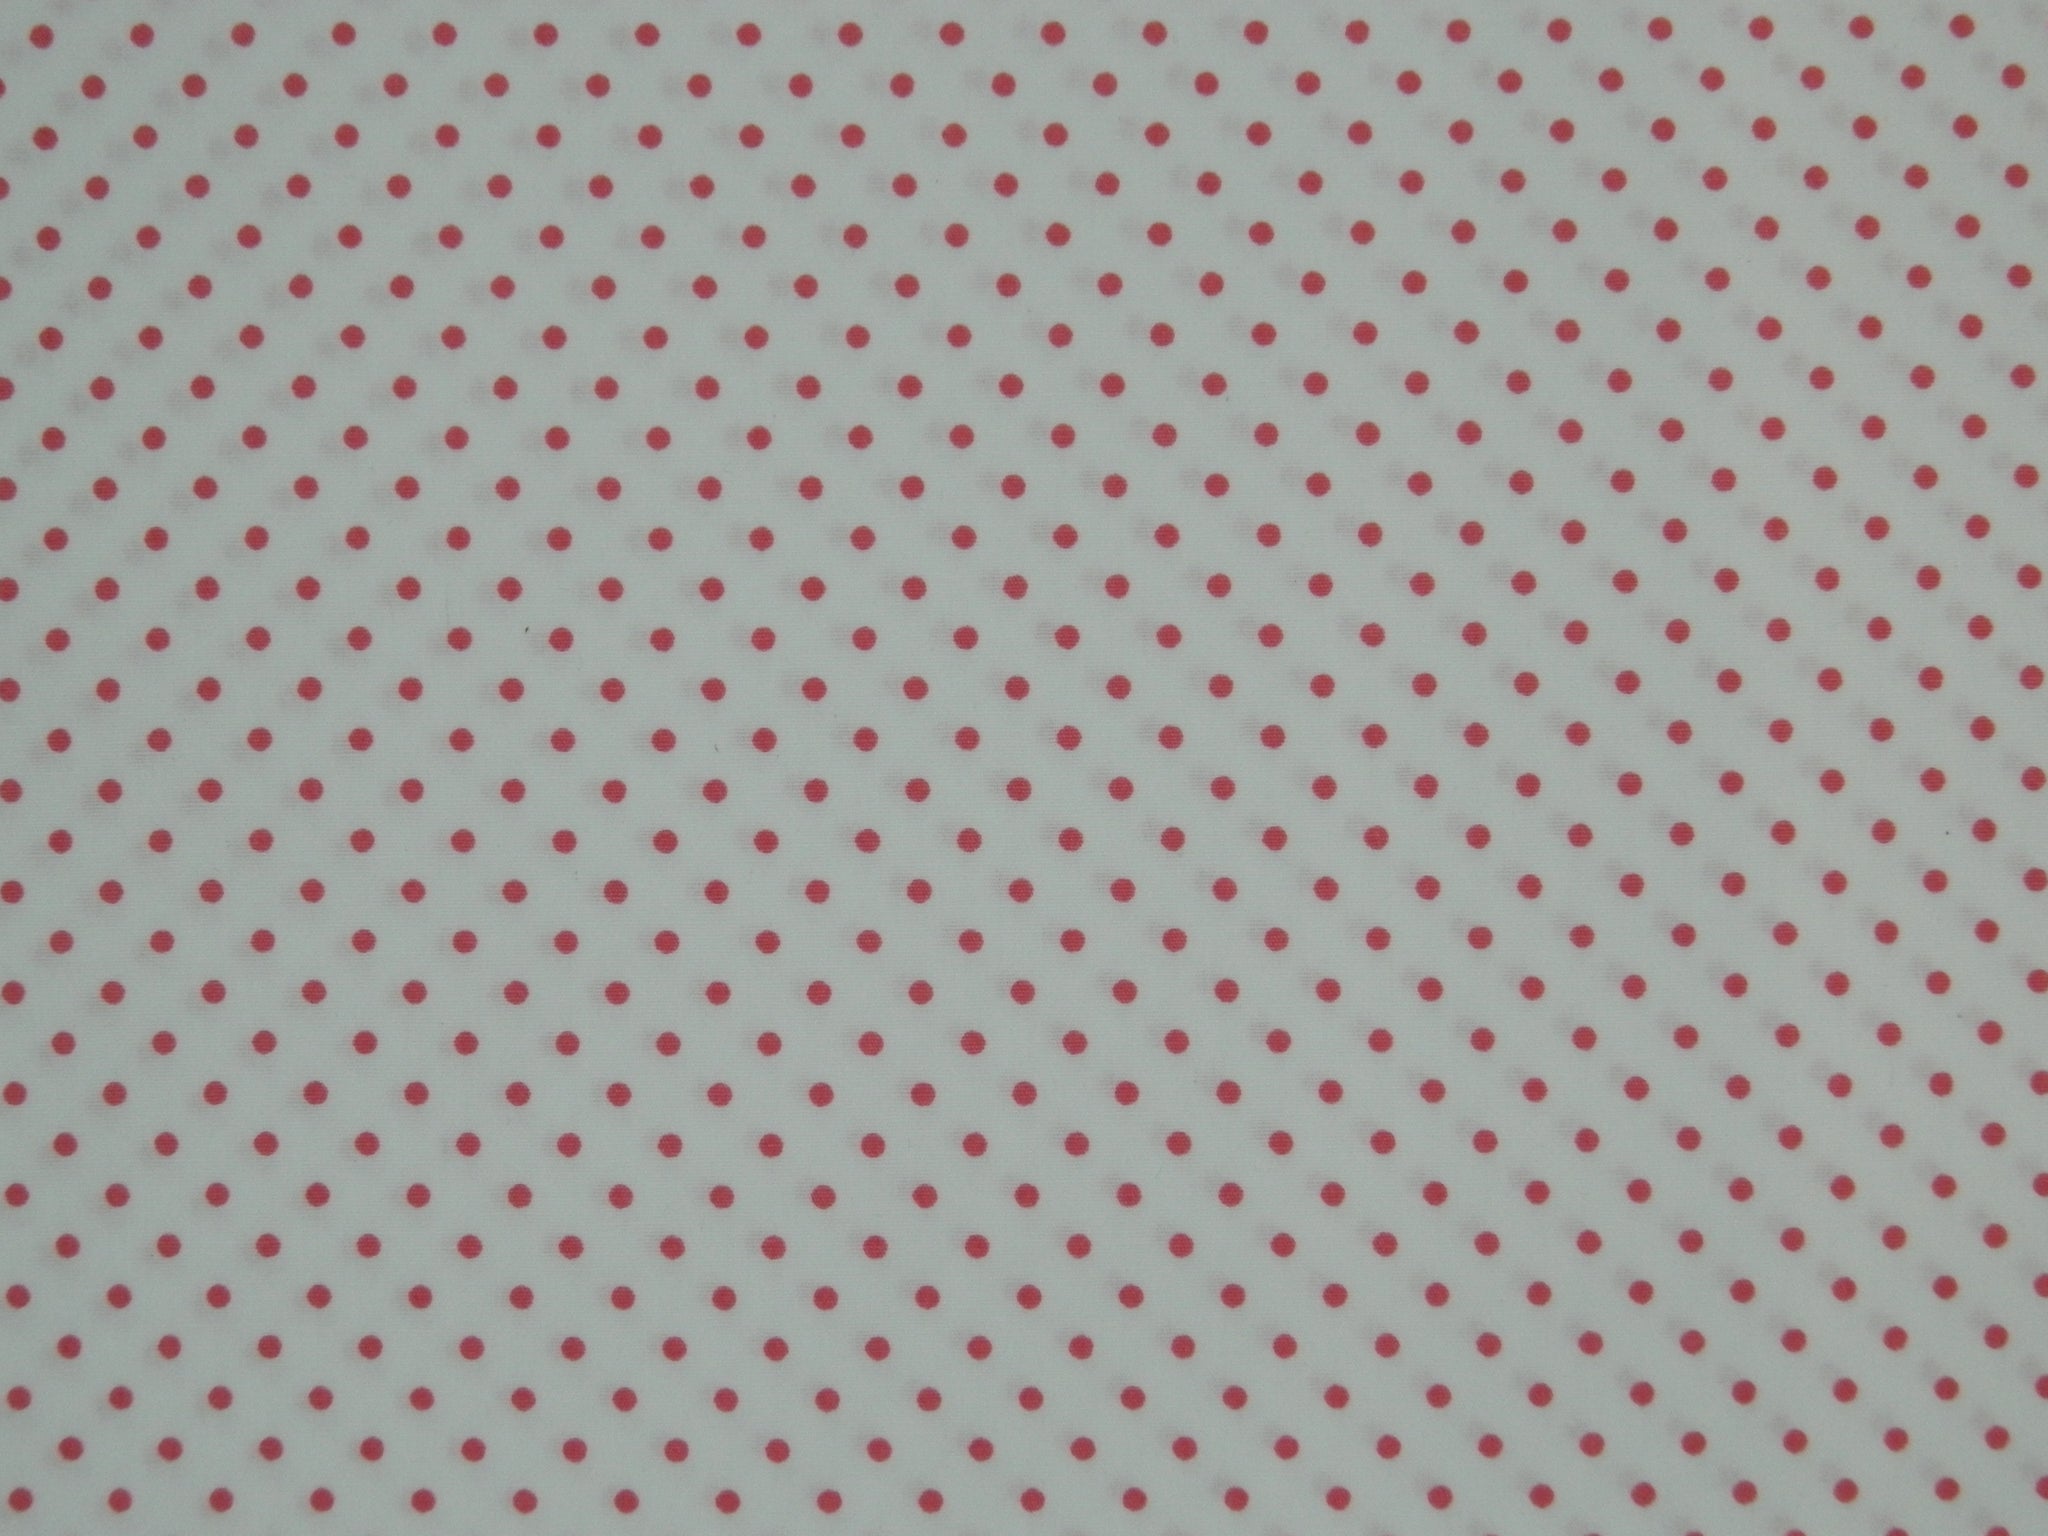 Spots & Dots  Pink & White 88190 2-21